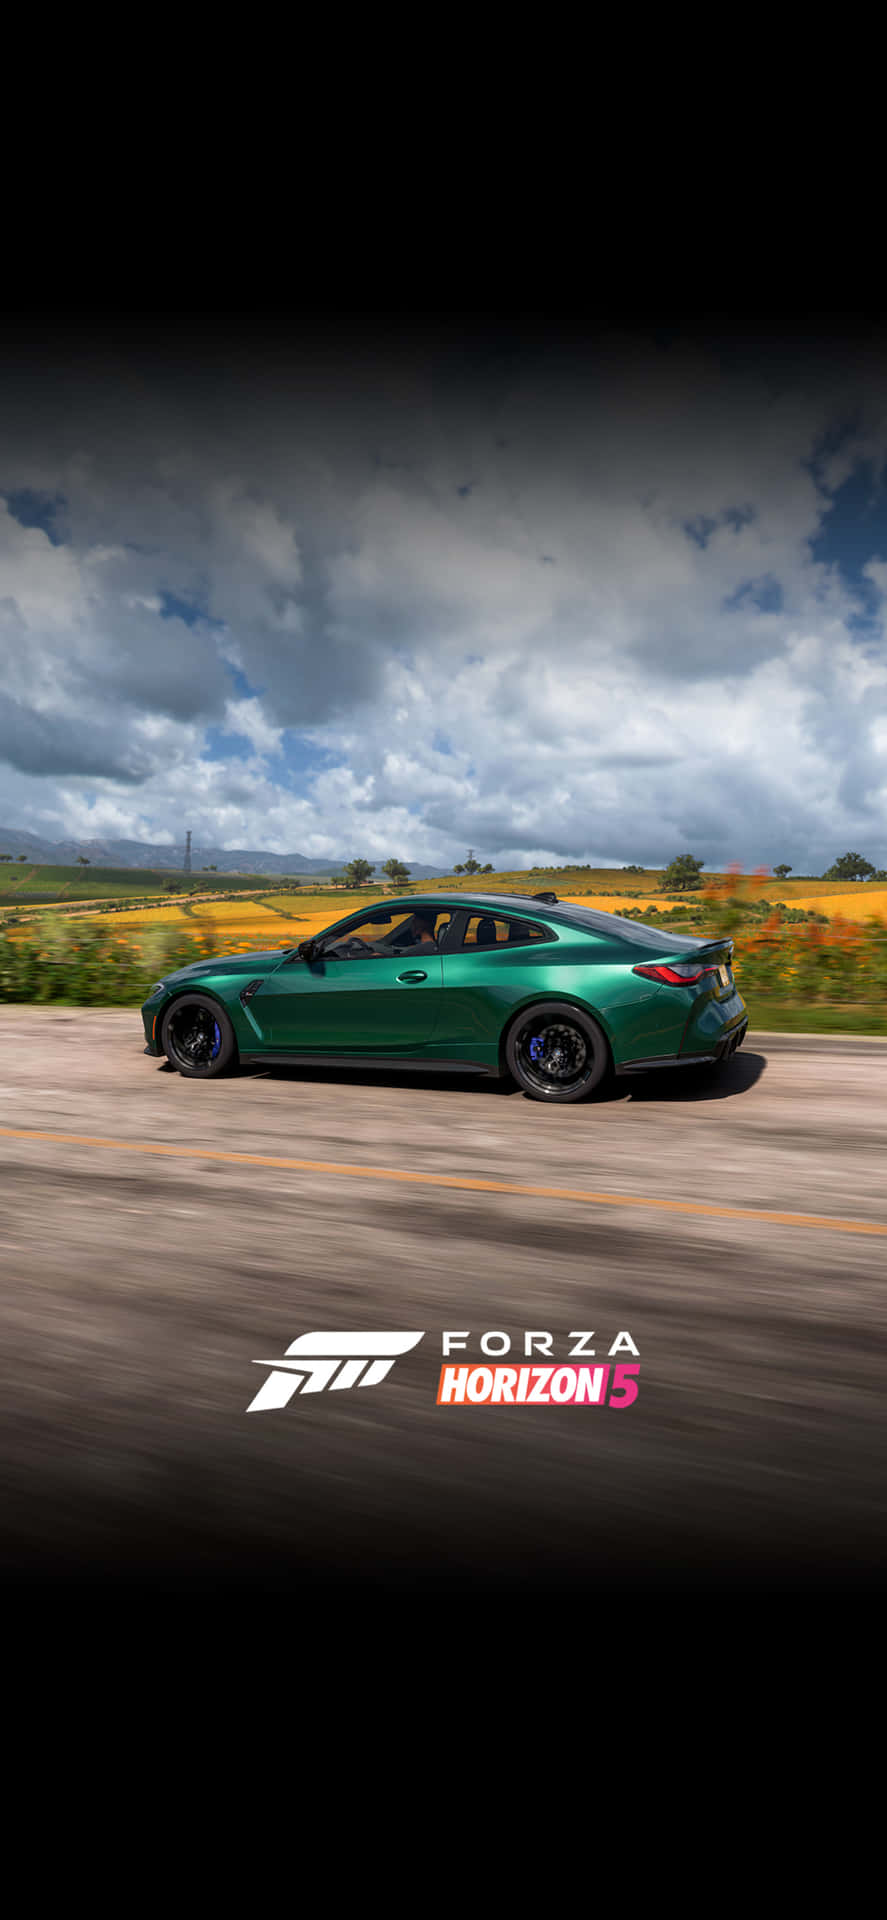 Grünerbmw M4 Iphone X Hintergrundbild Für Forza Motorsport 7